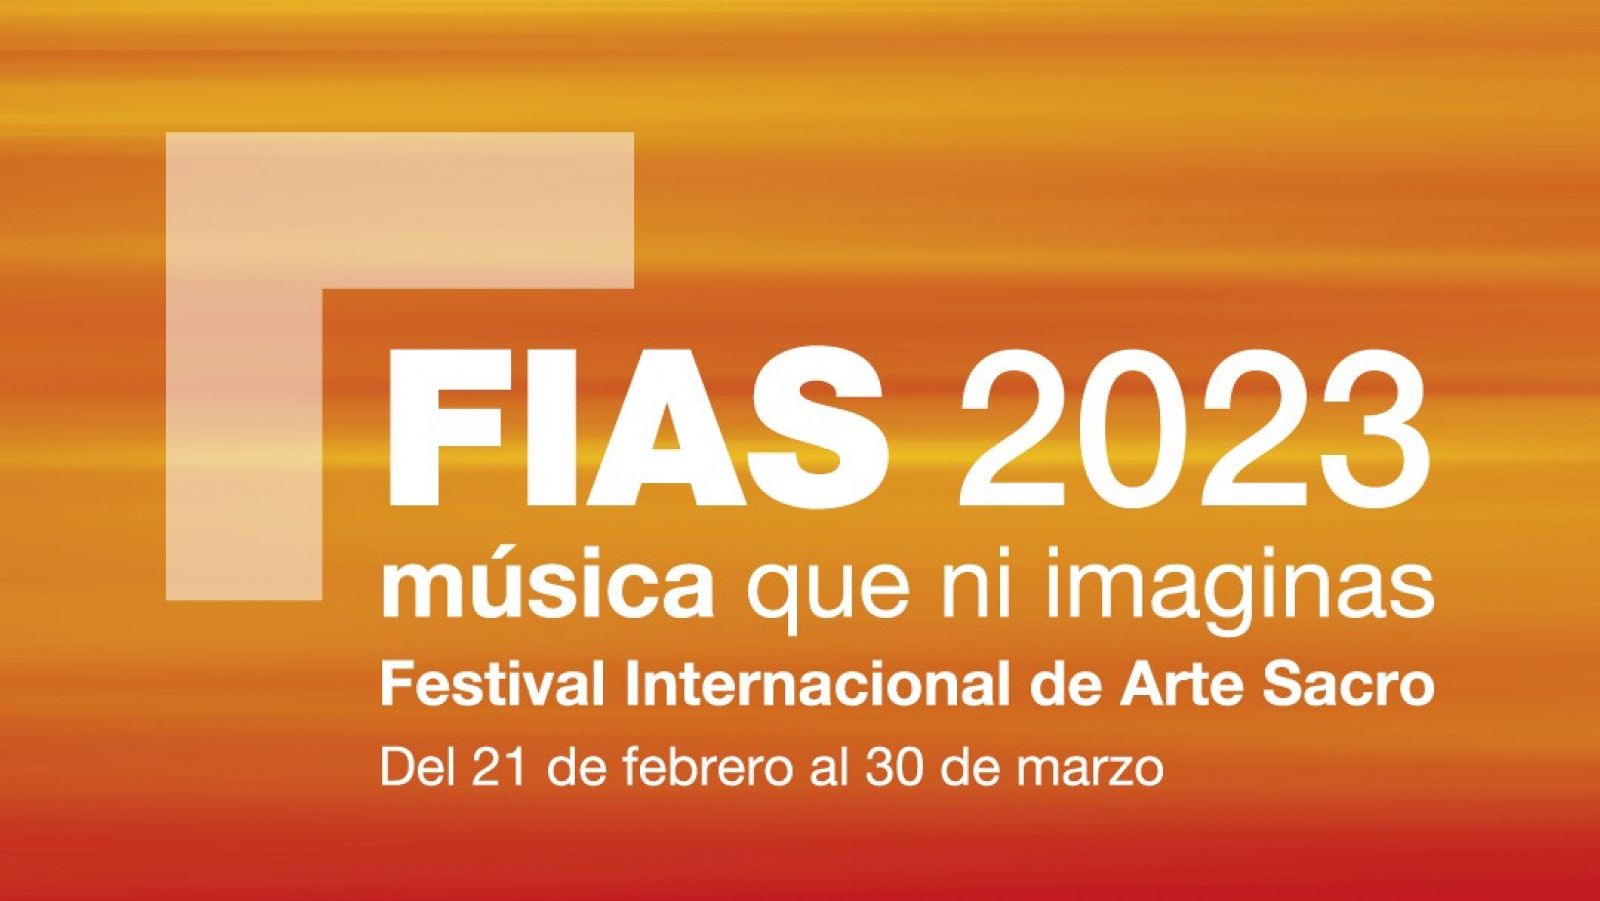 El Festival Internacional de Arte Sacro 2023